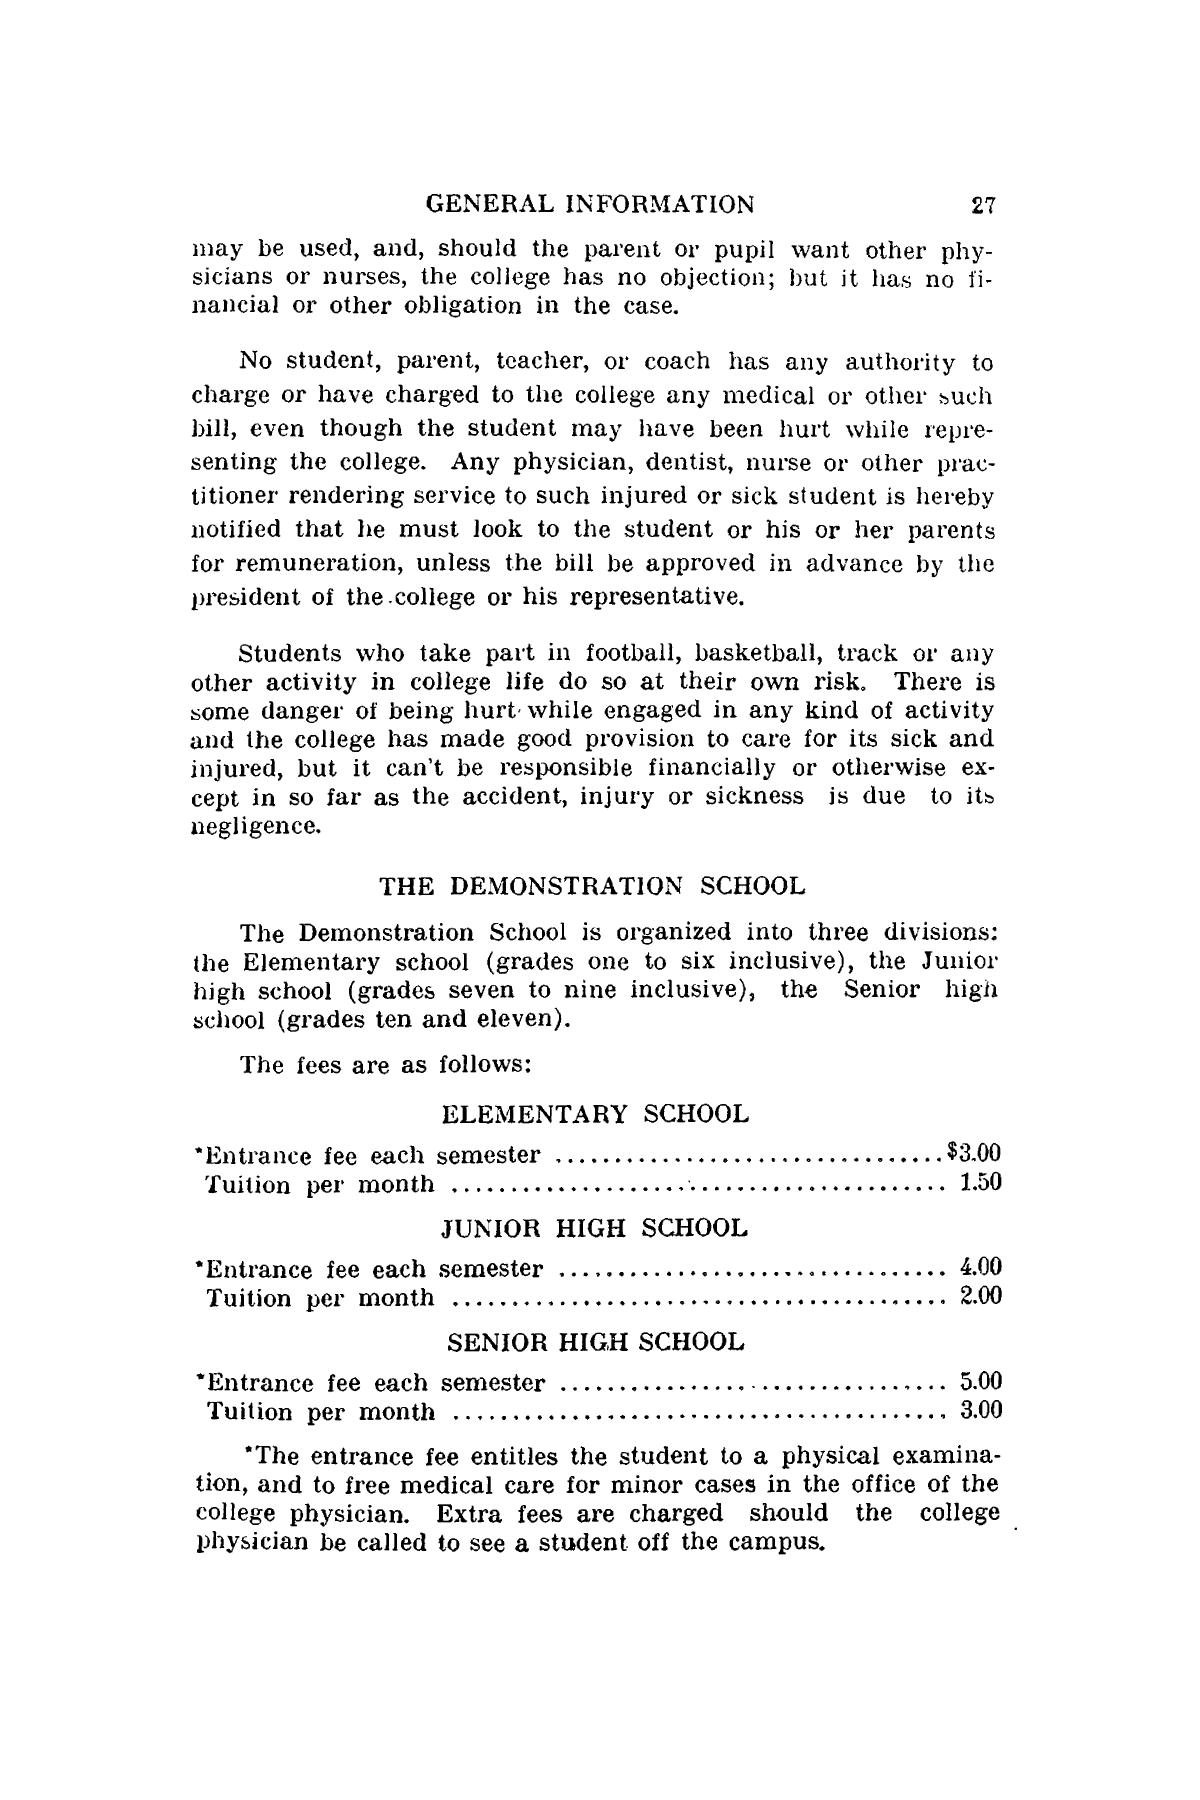 Catalog of Abilene Christian College, 1936-1937
                                                
                                                    27
                                                